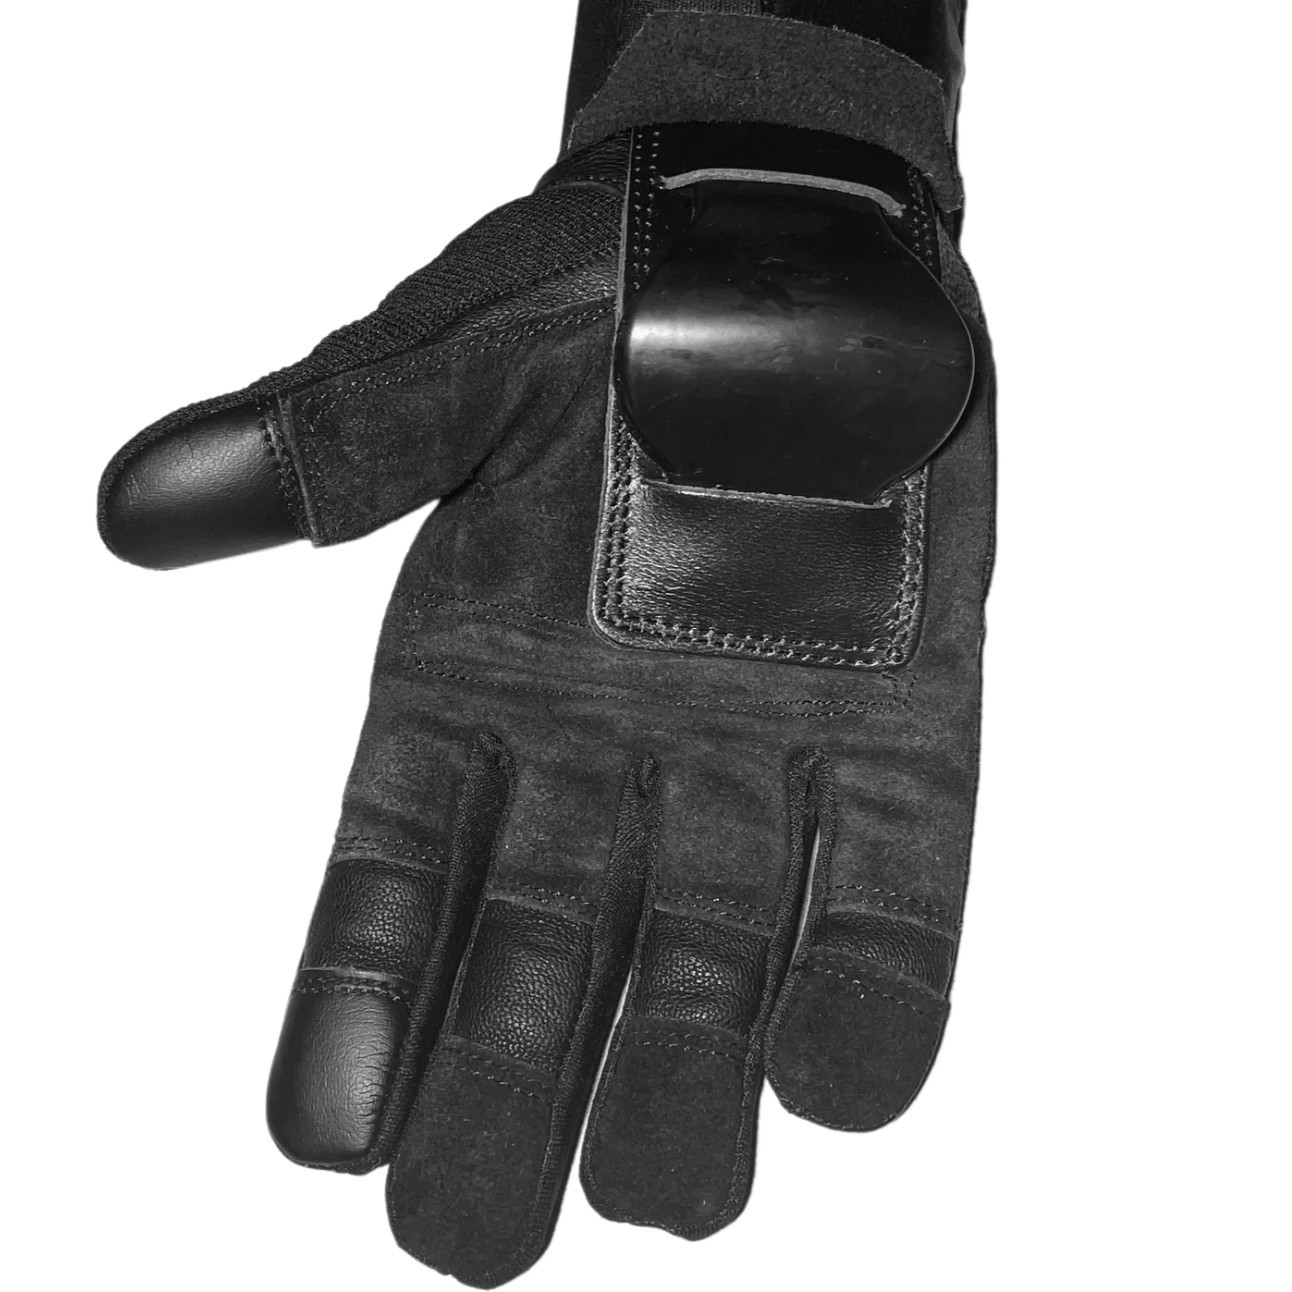 FXNCTION sender wrist guards - full finger glove